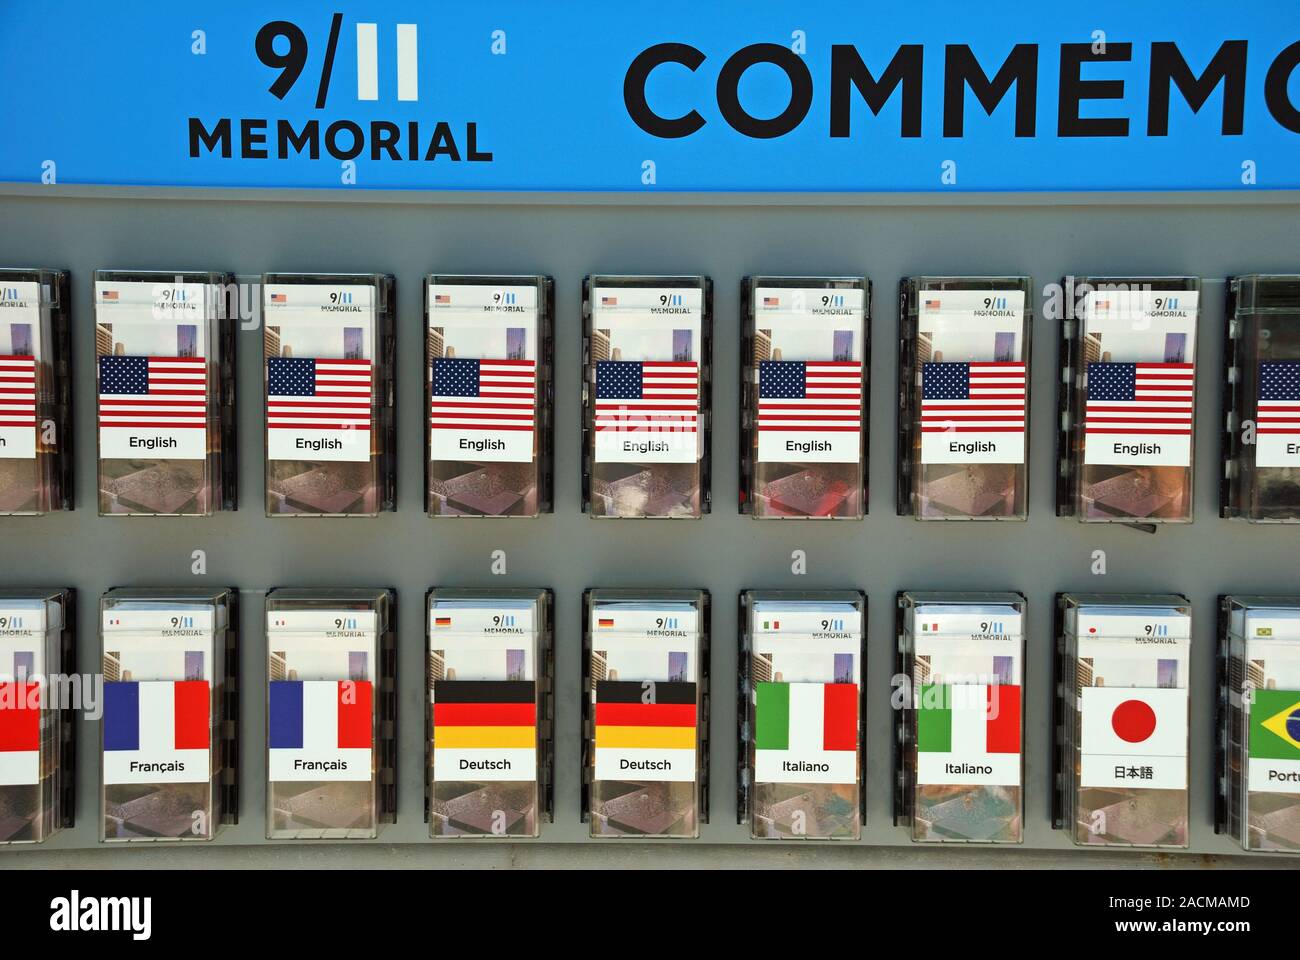 Guide du musée mémorial pour le 11 septembre, guide, dans de nombreuses langues du monde, New York, USA, Amérique Latine Banque D'Images